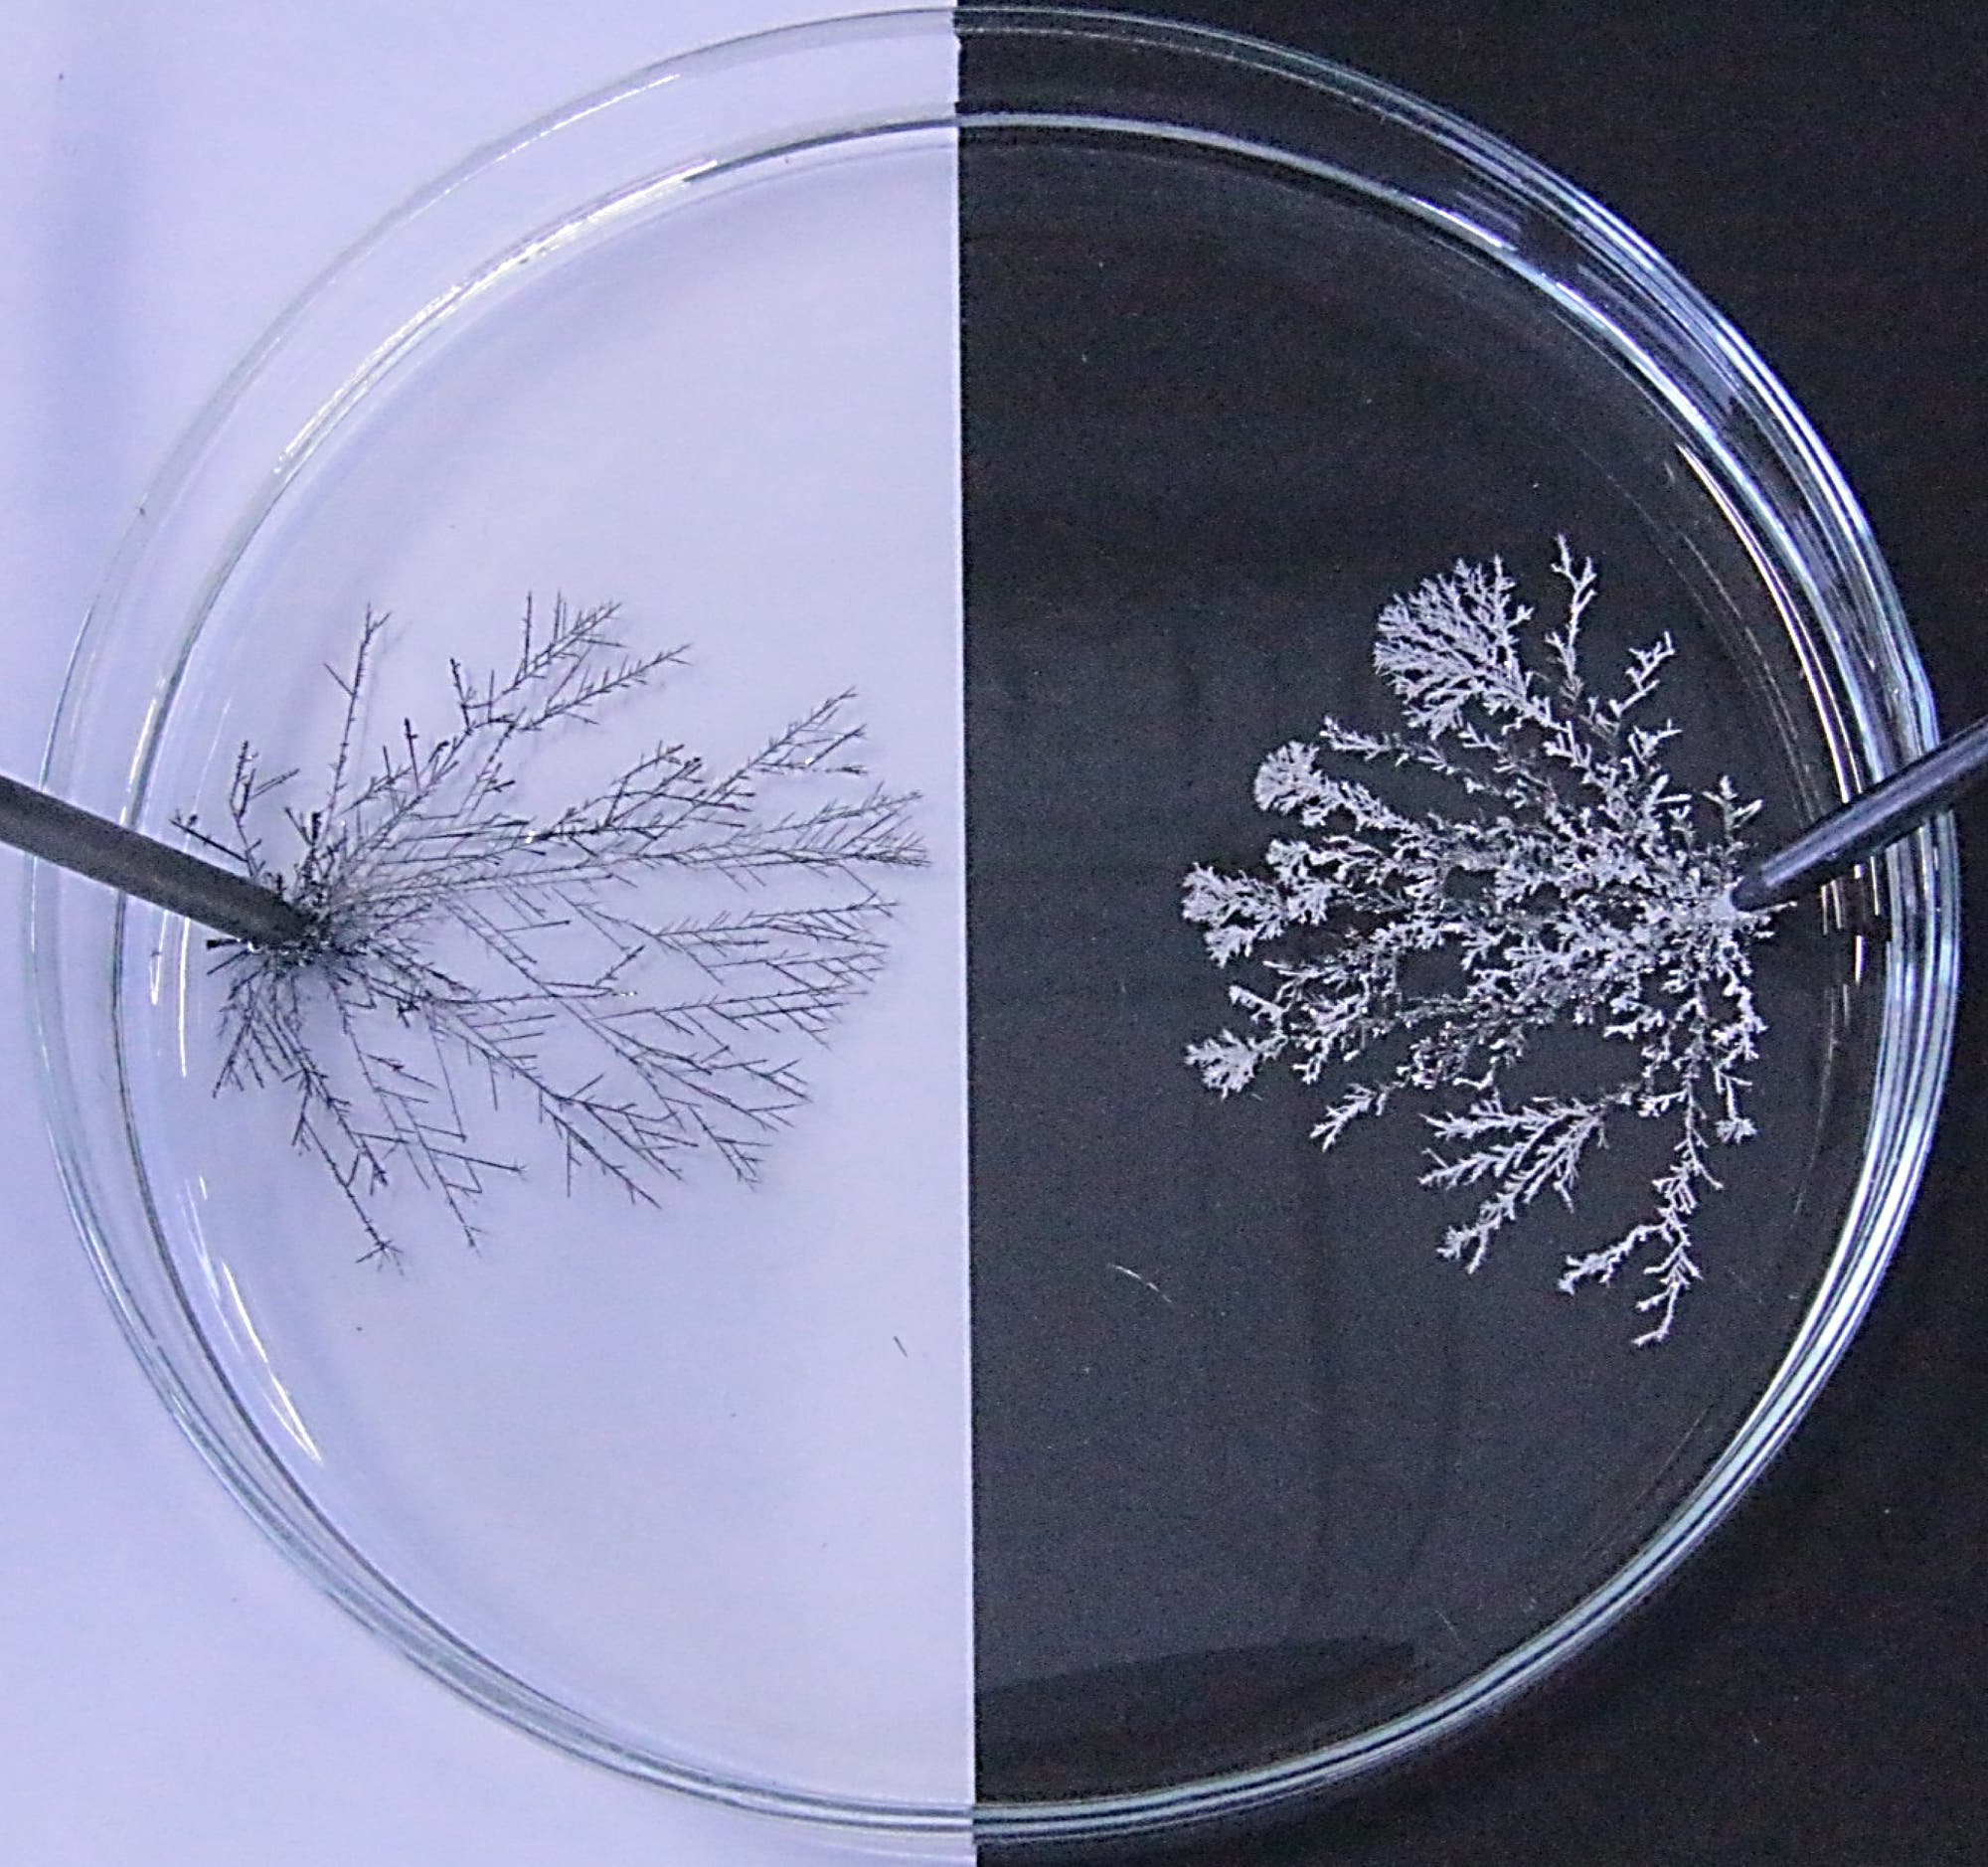 in einer Petrischale befinden sich links und rechts zwei schwarze Elektroden, an denen verzweigte silbrige Bäumchen wachsen